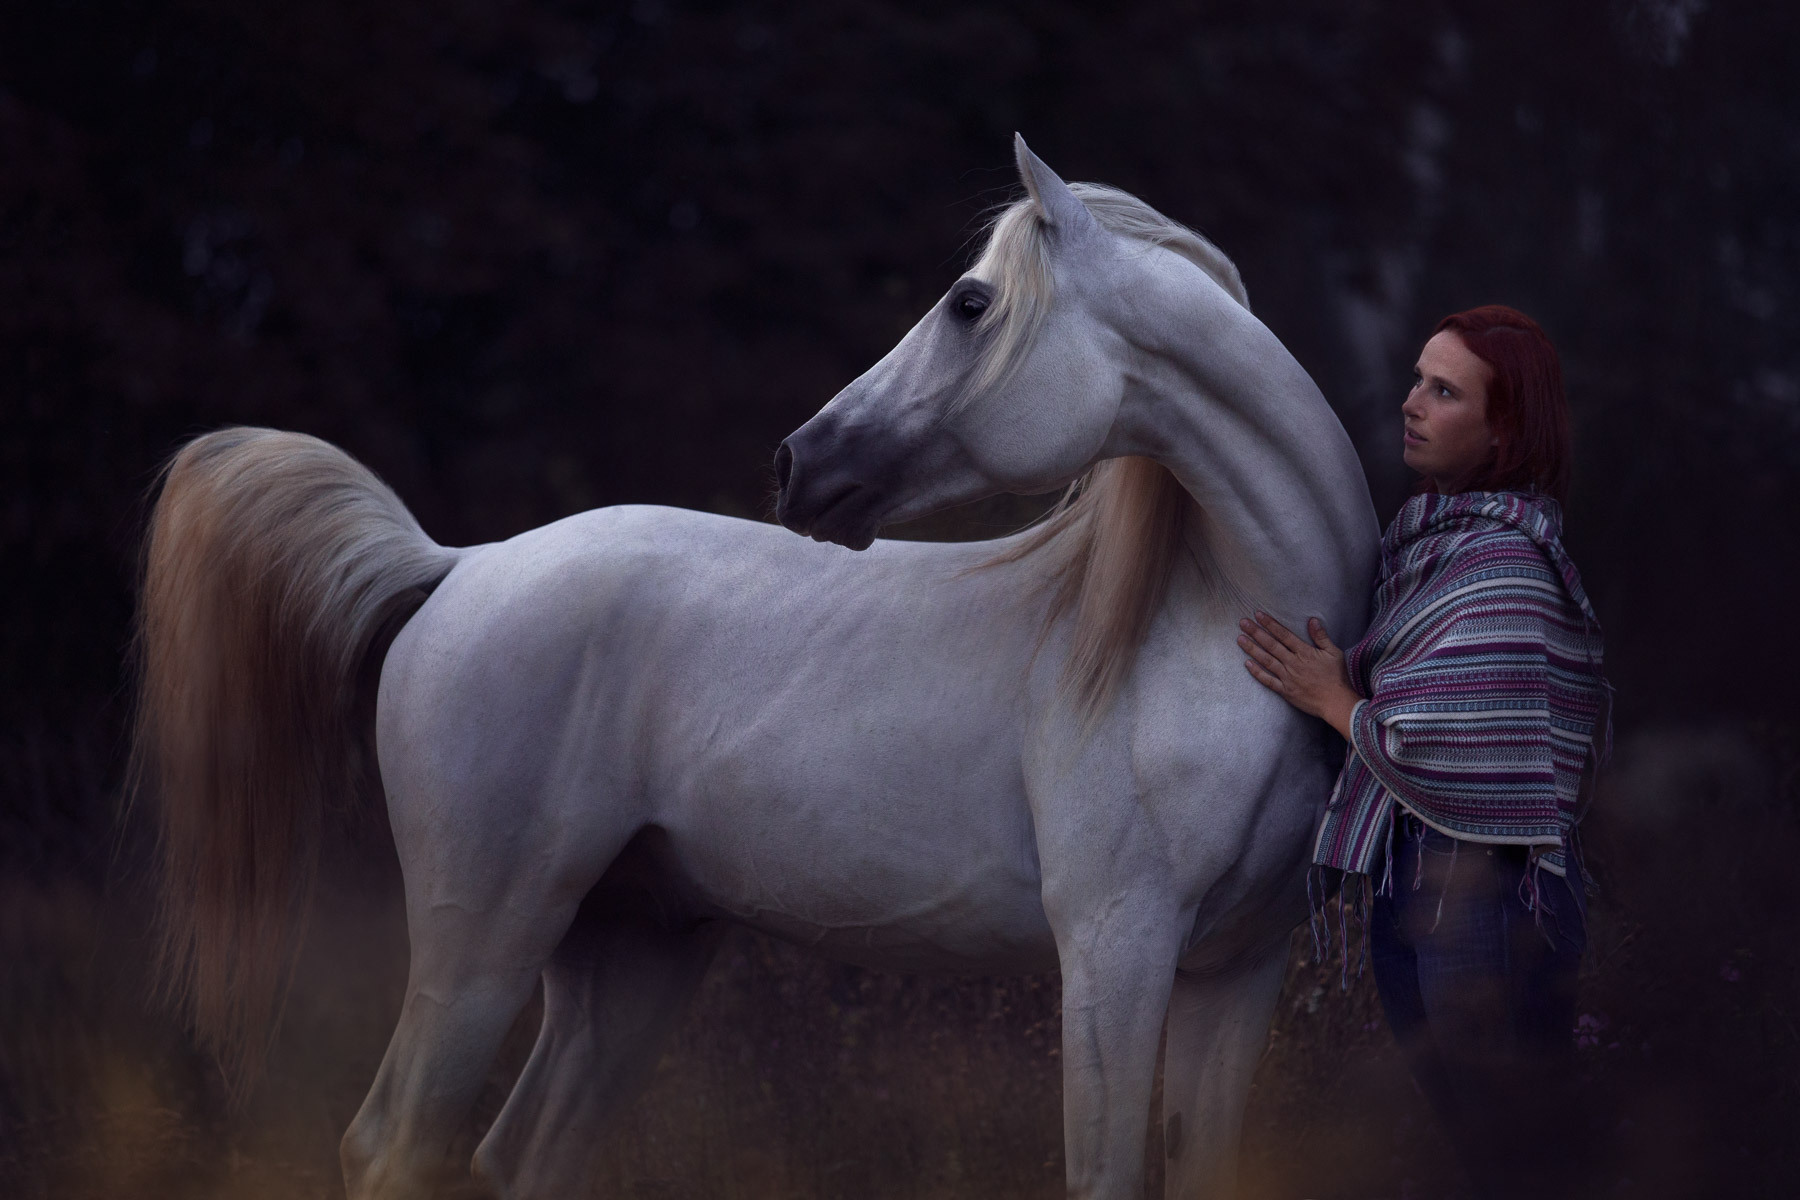 Bildbearbeitung mit Photoshop: Wiederherstellung, Farbanpassung, D&B an weißem Pferd mit Frau